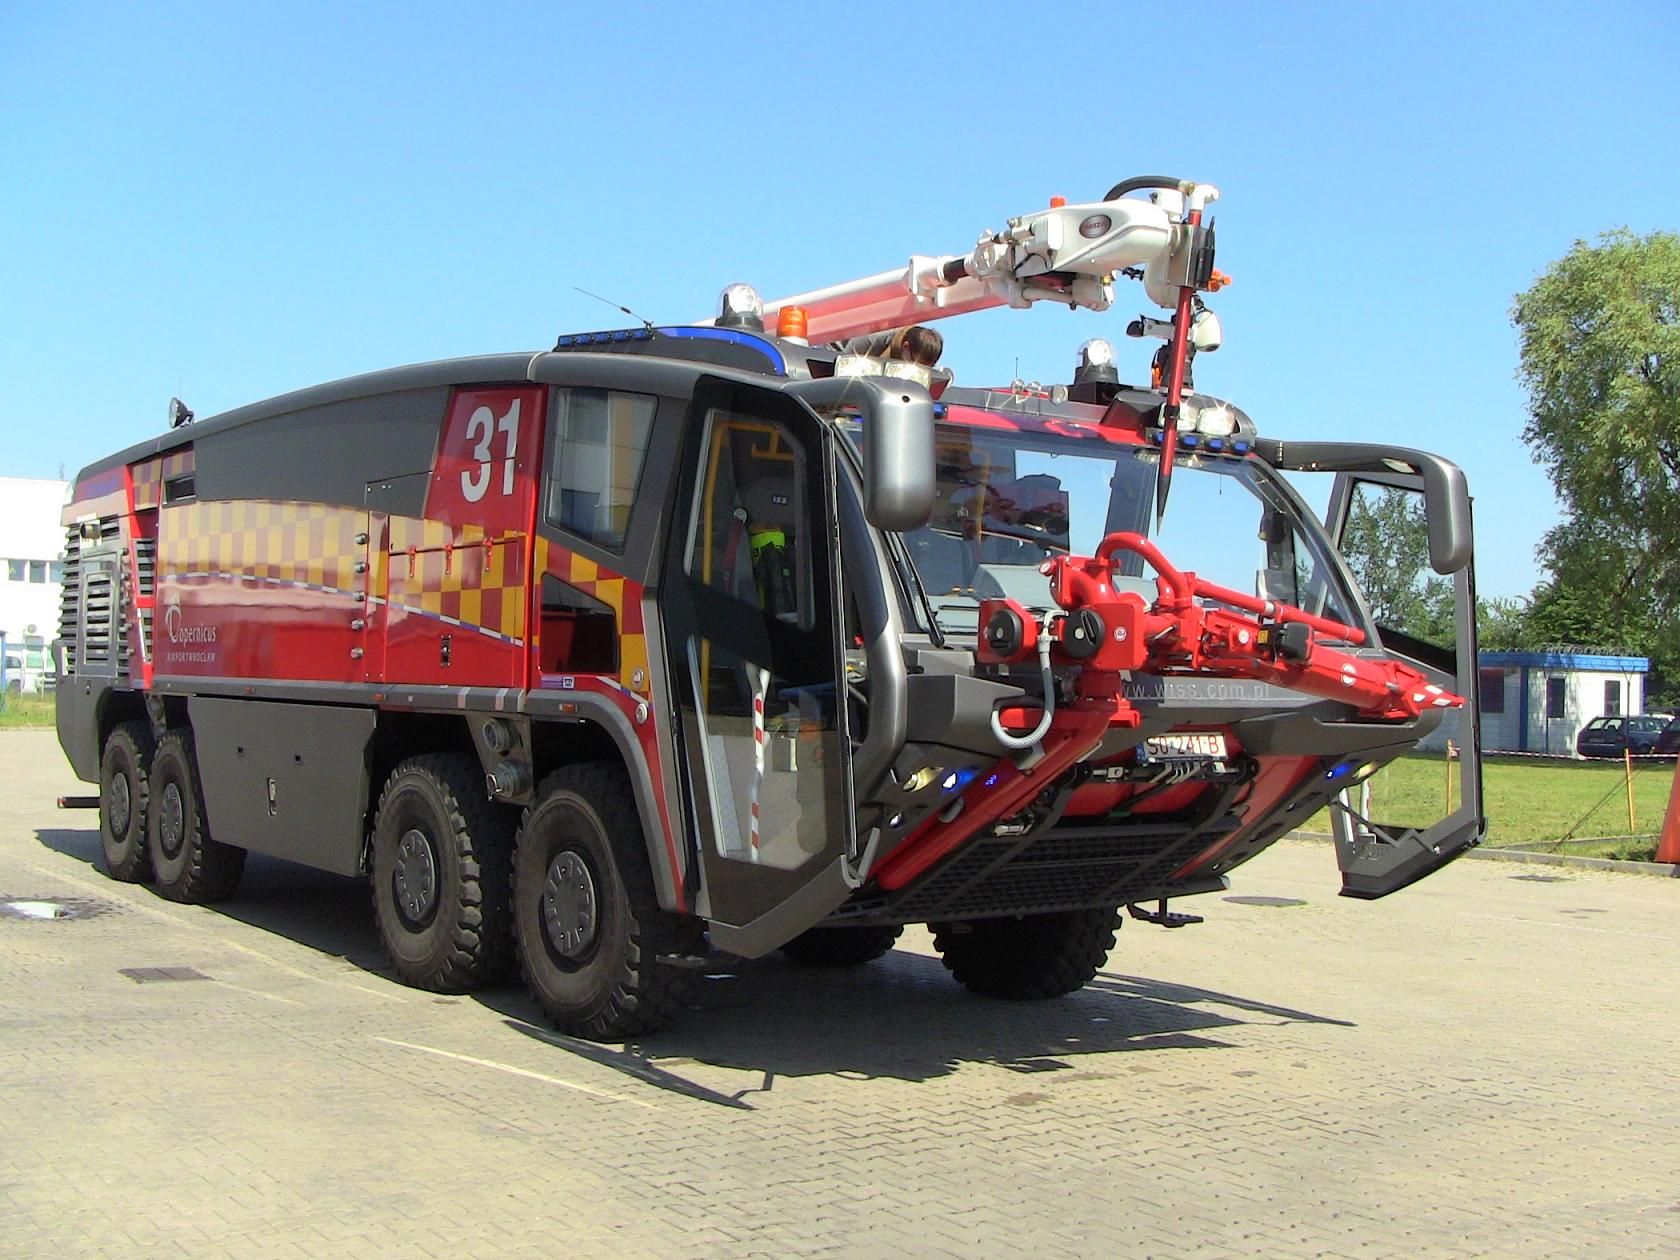 Wóz strażacki, dźwig, karetka - lotniskowa straż pożarna pokaże swoje możliwości, archiwum